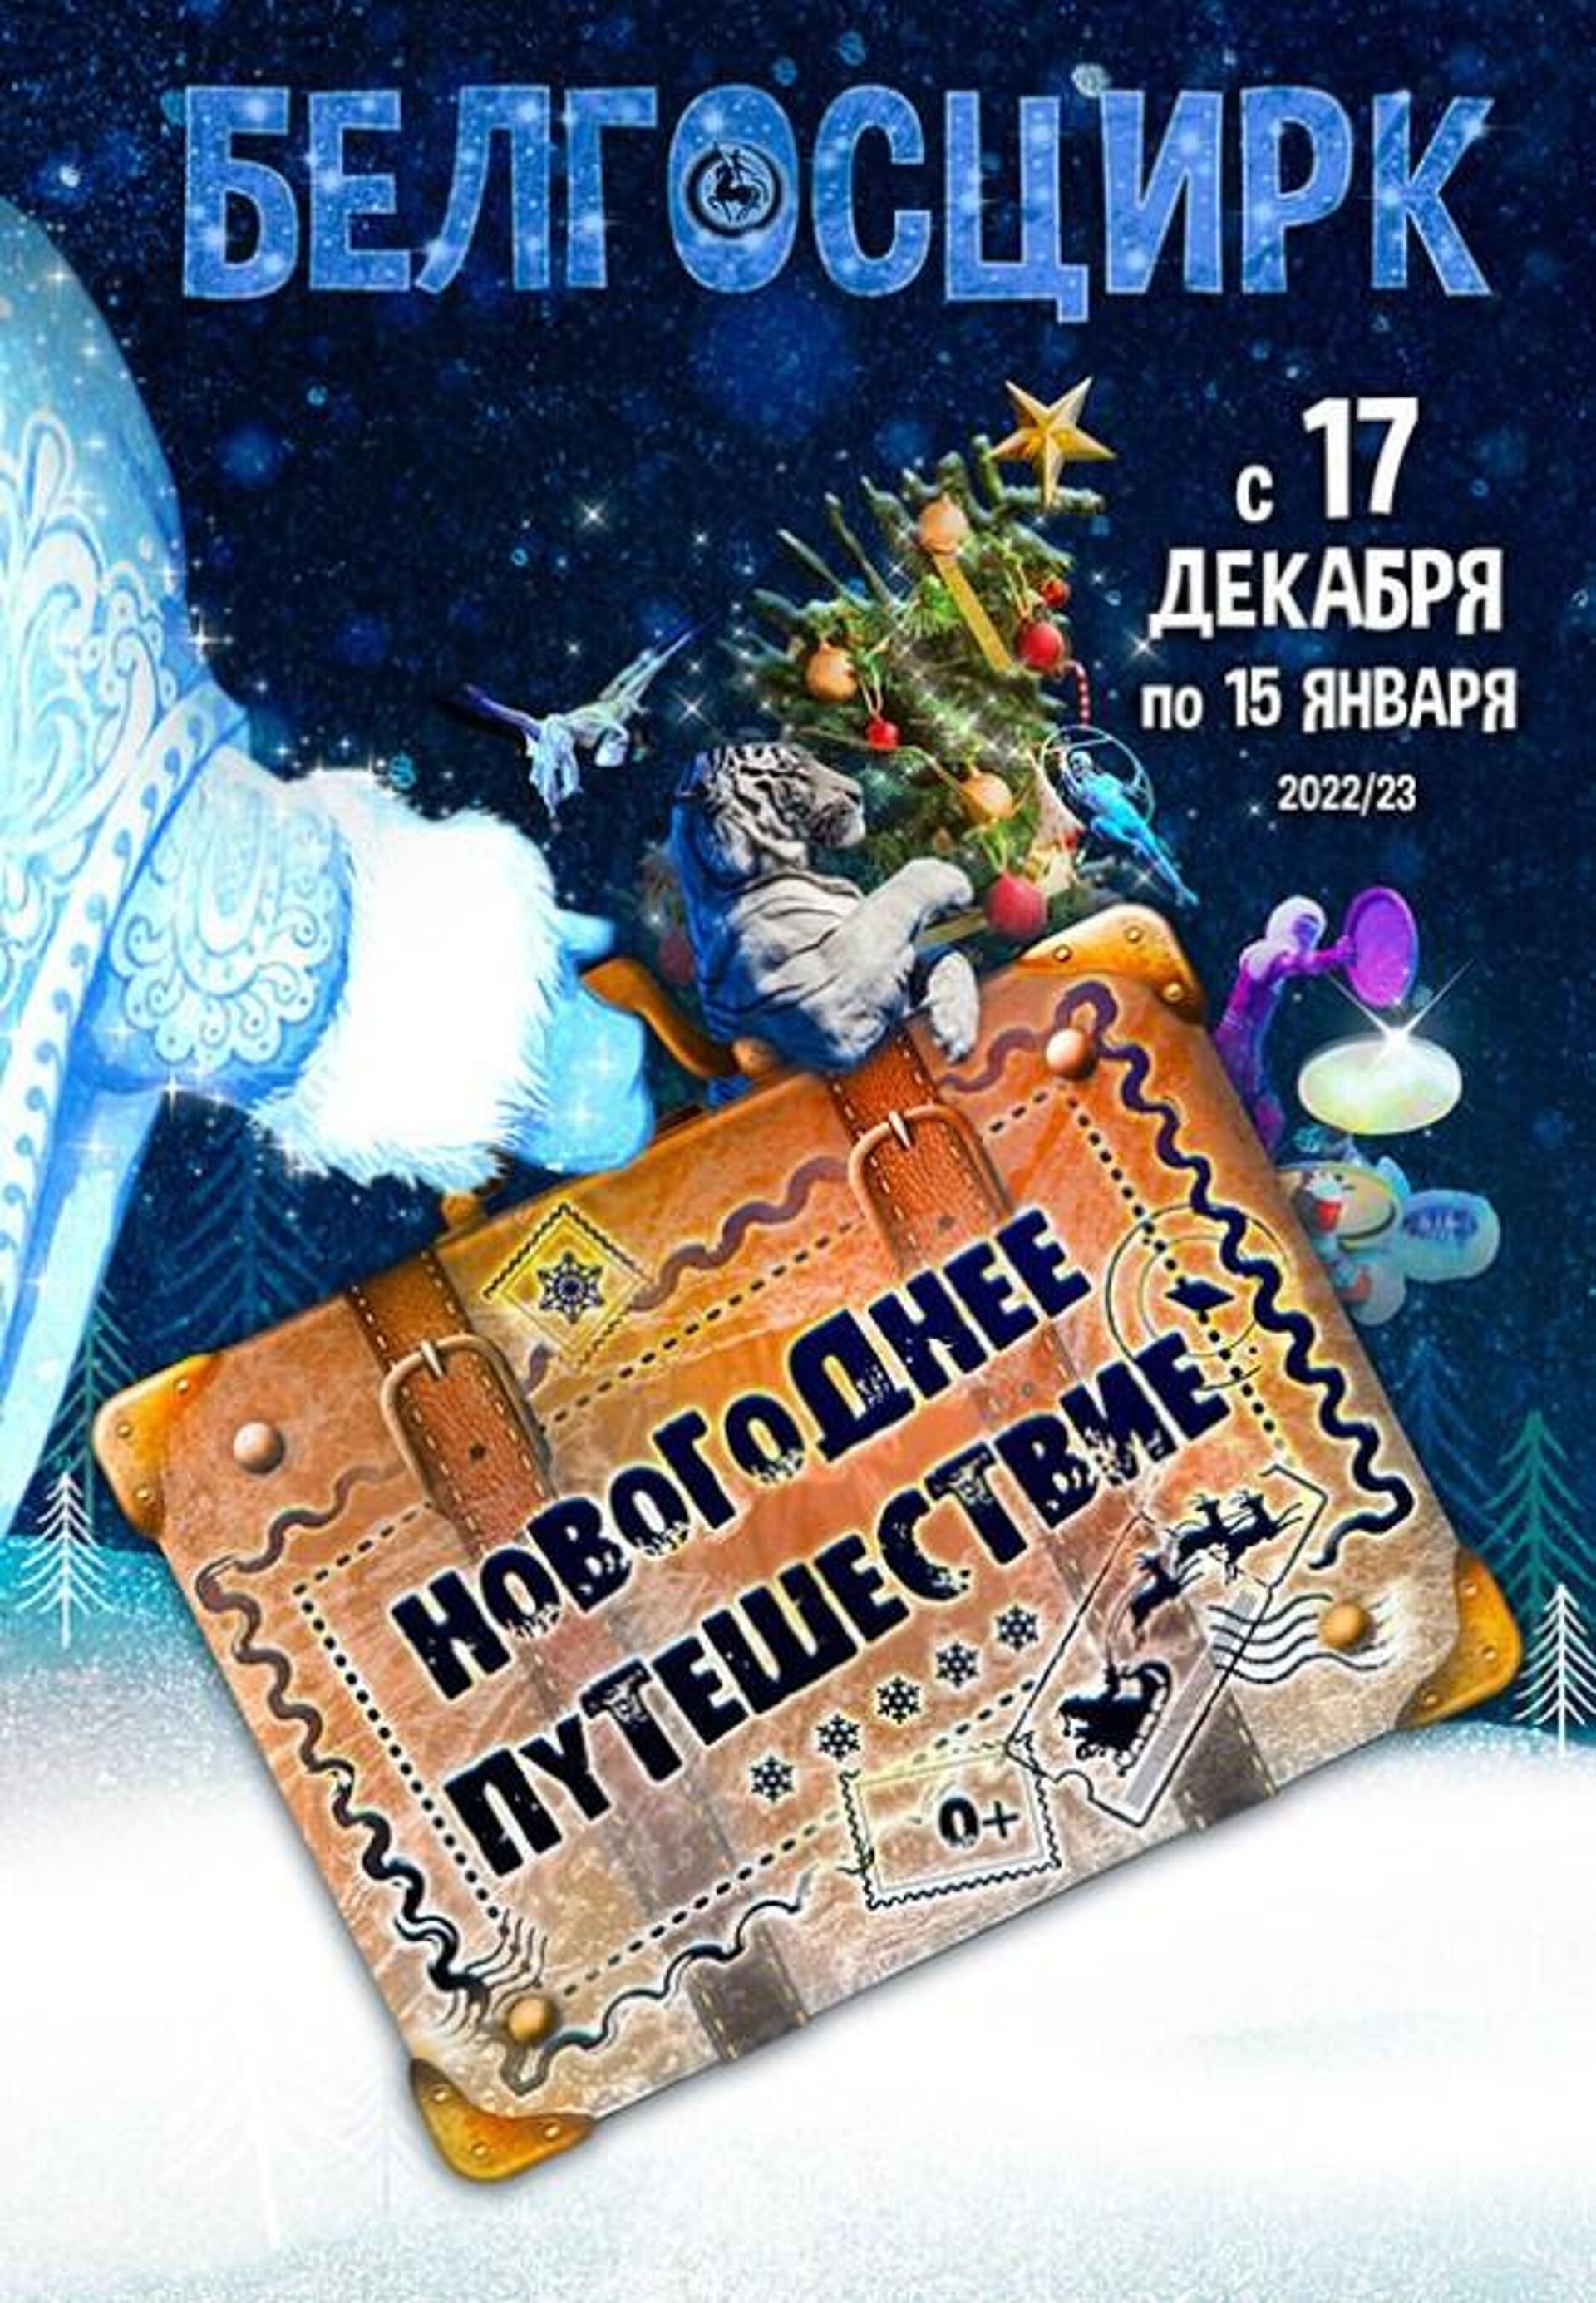 В канун новогодних праздников Белгосцирк приглашает в незабываемое Новогоднее путешествие - Sputnik Беларусь, 1920, 21.12.2022